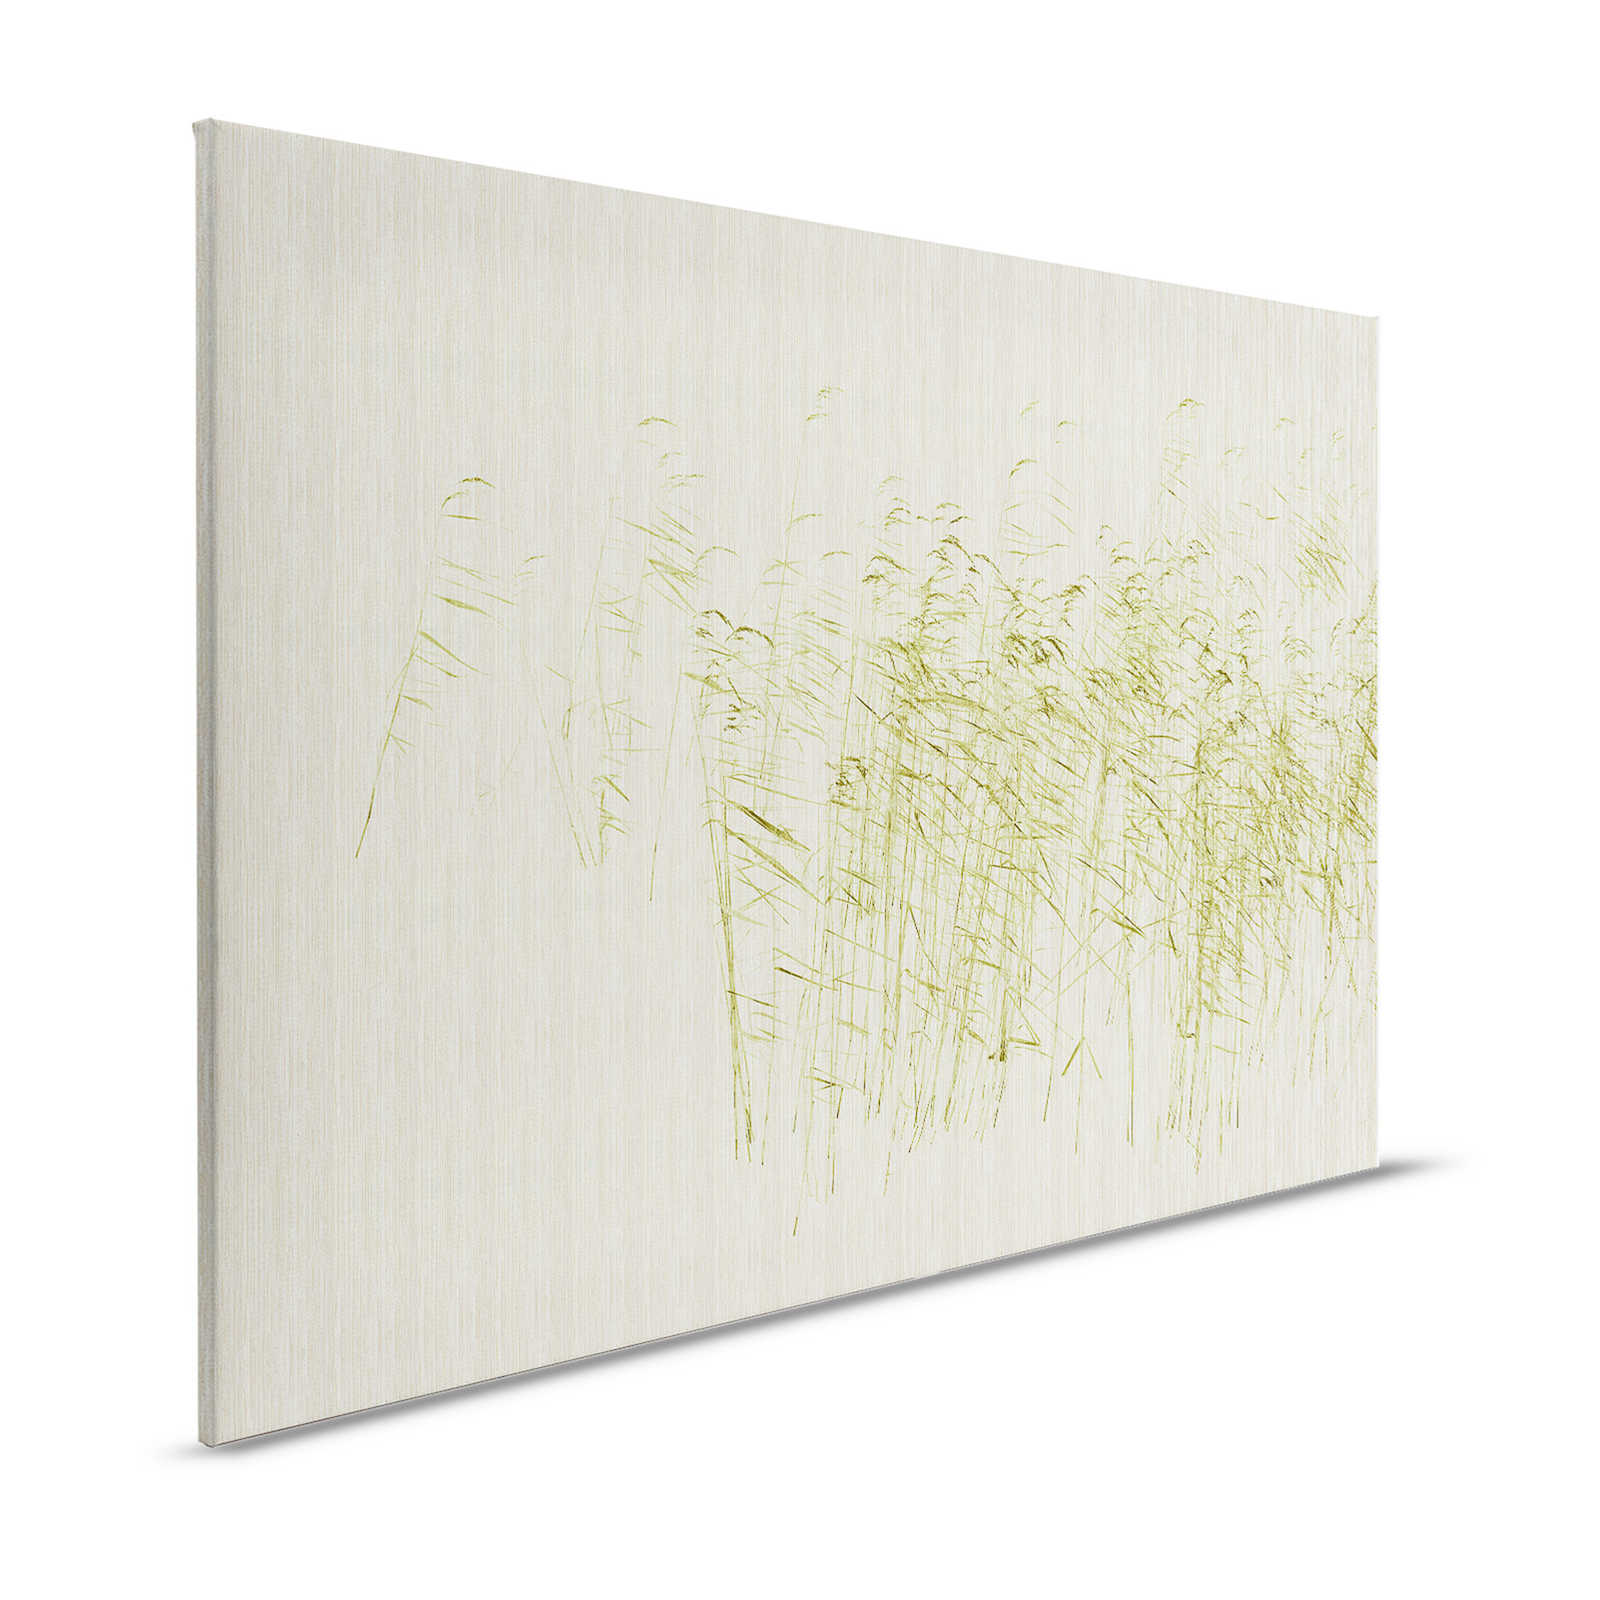 Allo stagno 1 - Tela naturalistica che dipinge gambi di canna verde allo stagno - 1,20 m x 0,80 m
